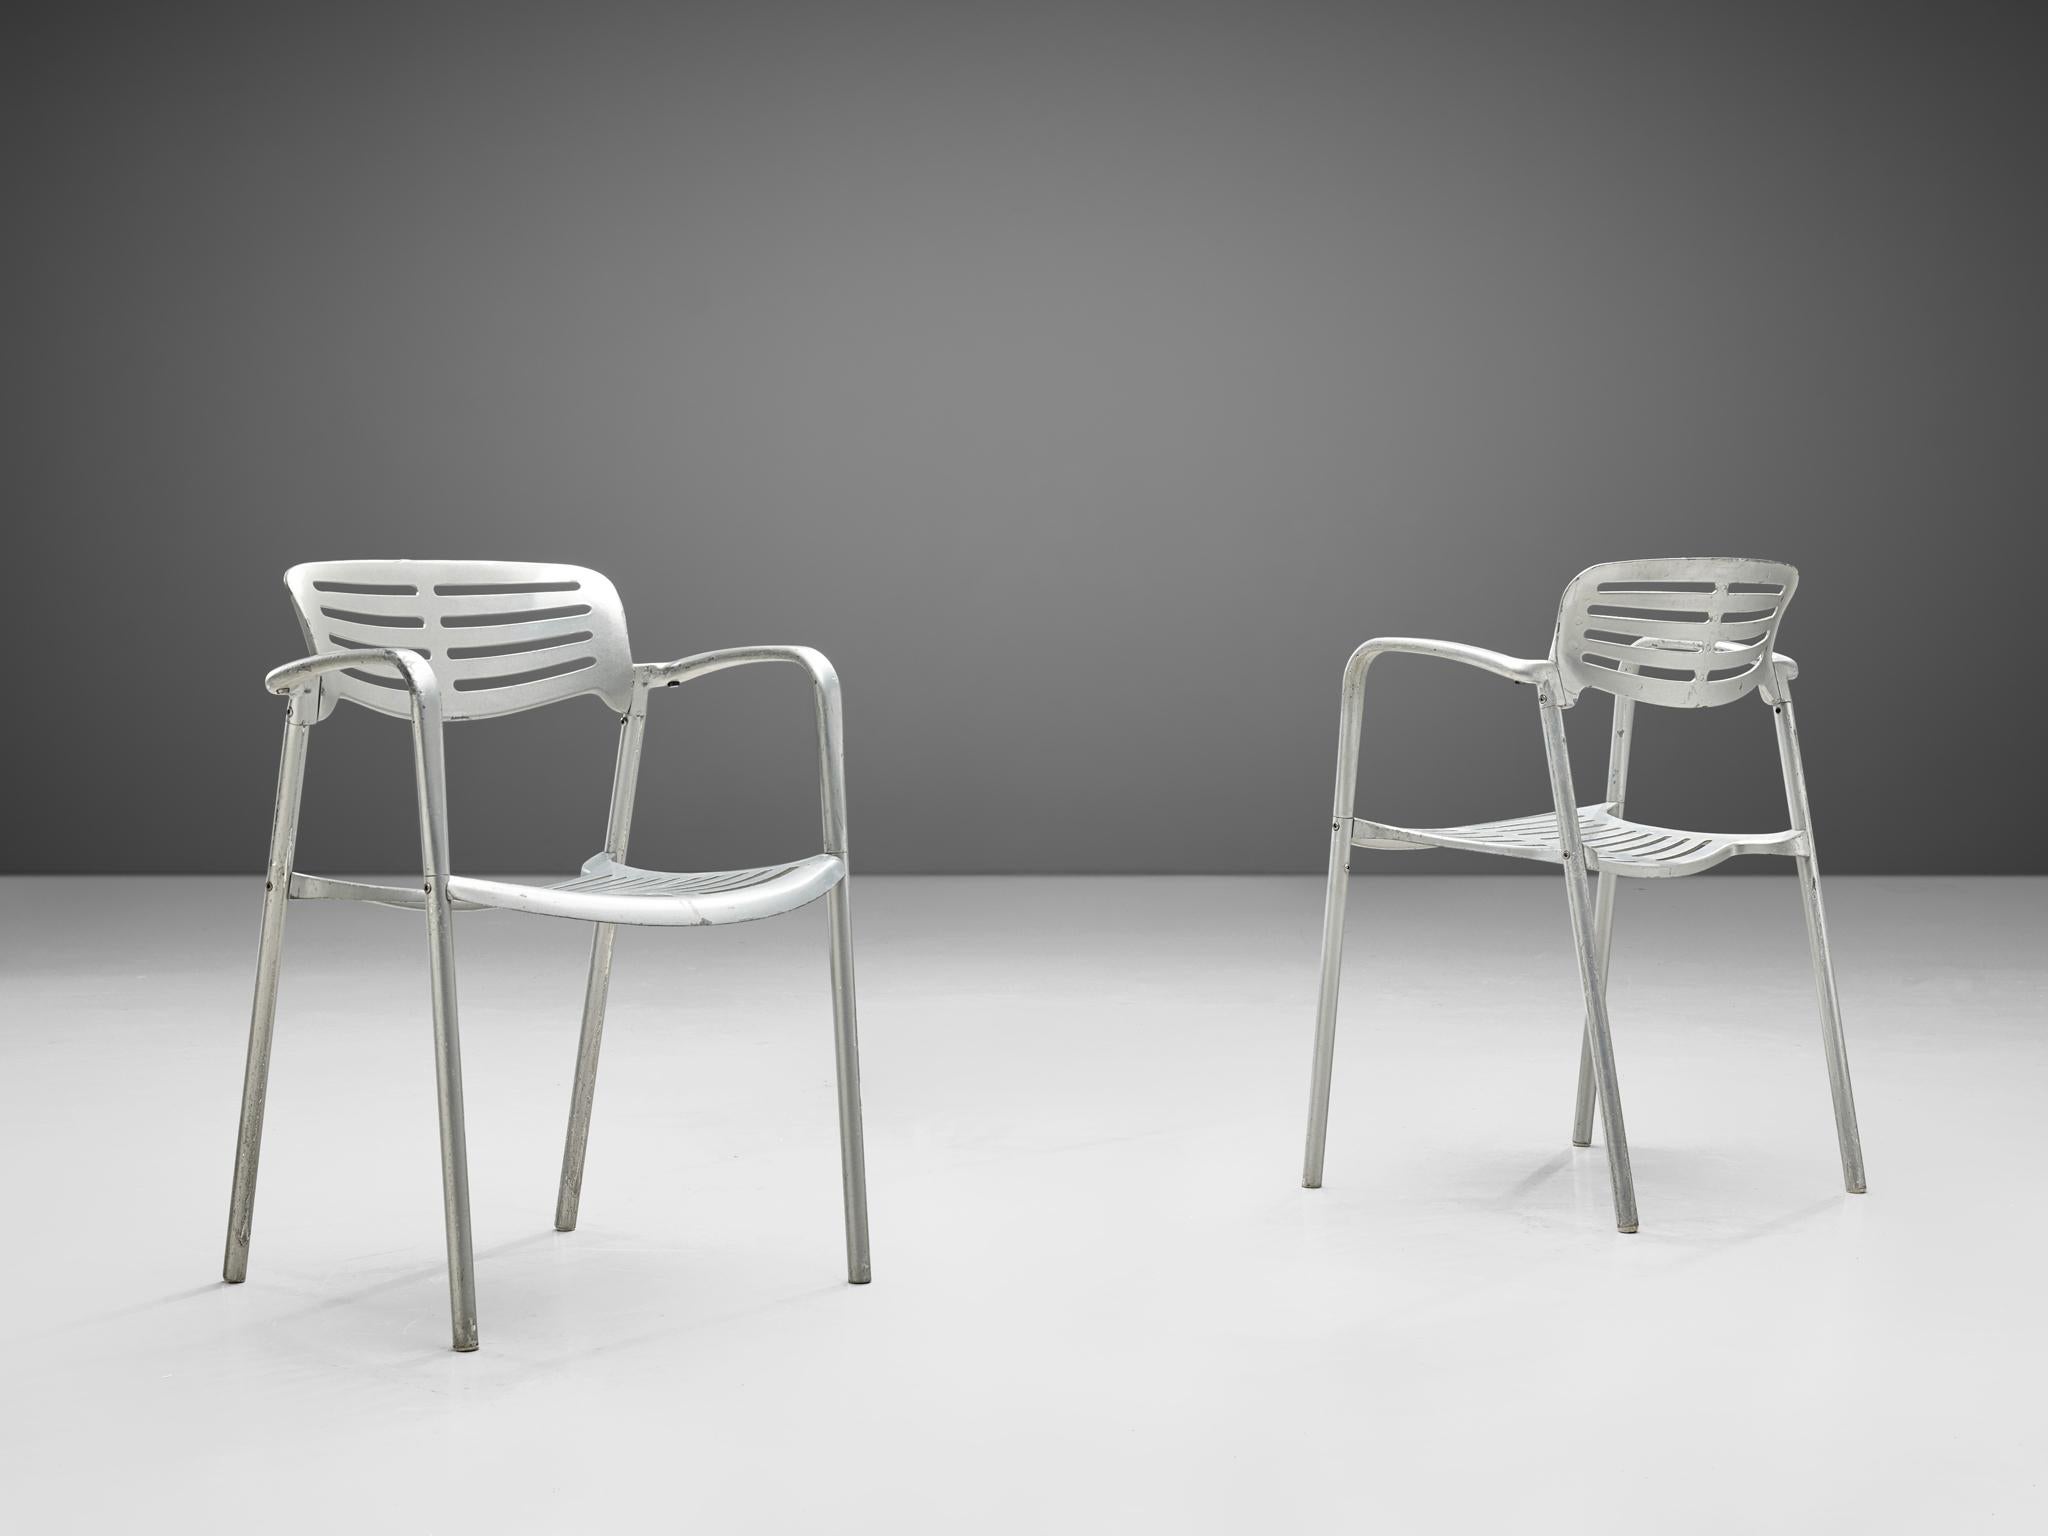 Jorge Pensi, Sessel, Aluminium, Spanien, 1988

Eine Reihe von Aluminiumstühlen von Jorge Spensi aus der Collection'S Toledo. Pensi entwarf die Stühle 